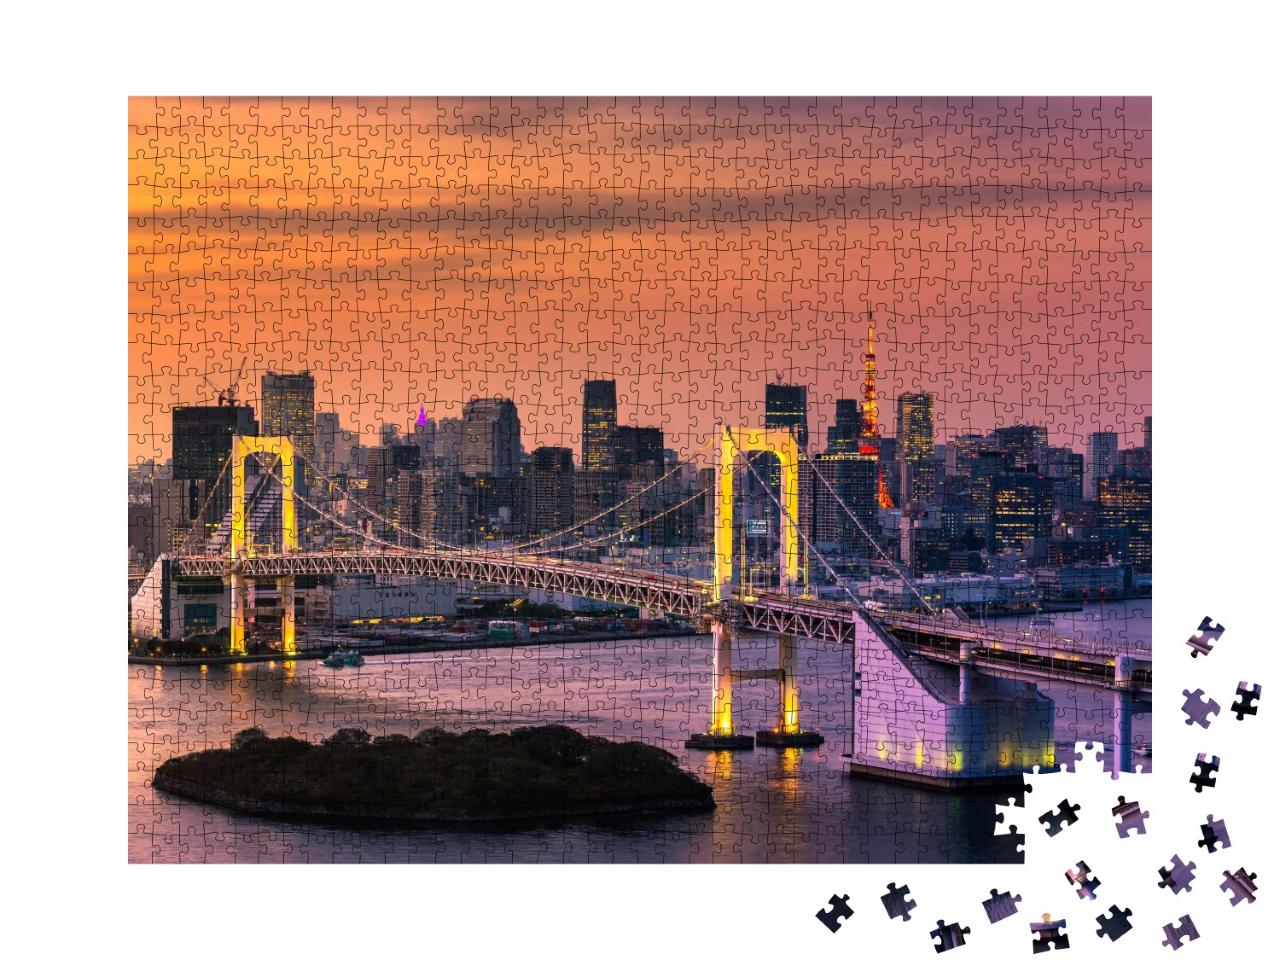 Puzzle de 1000 pièces « Baie de Tokyo et tour de Tokyo »